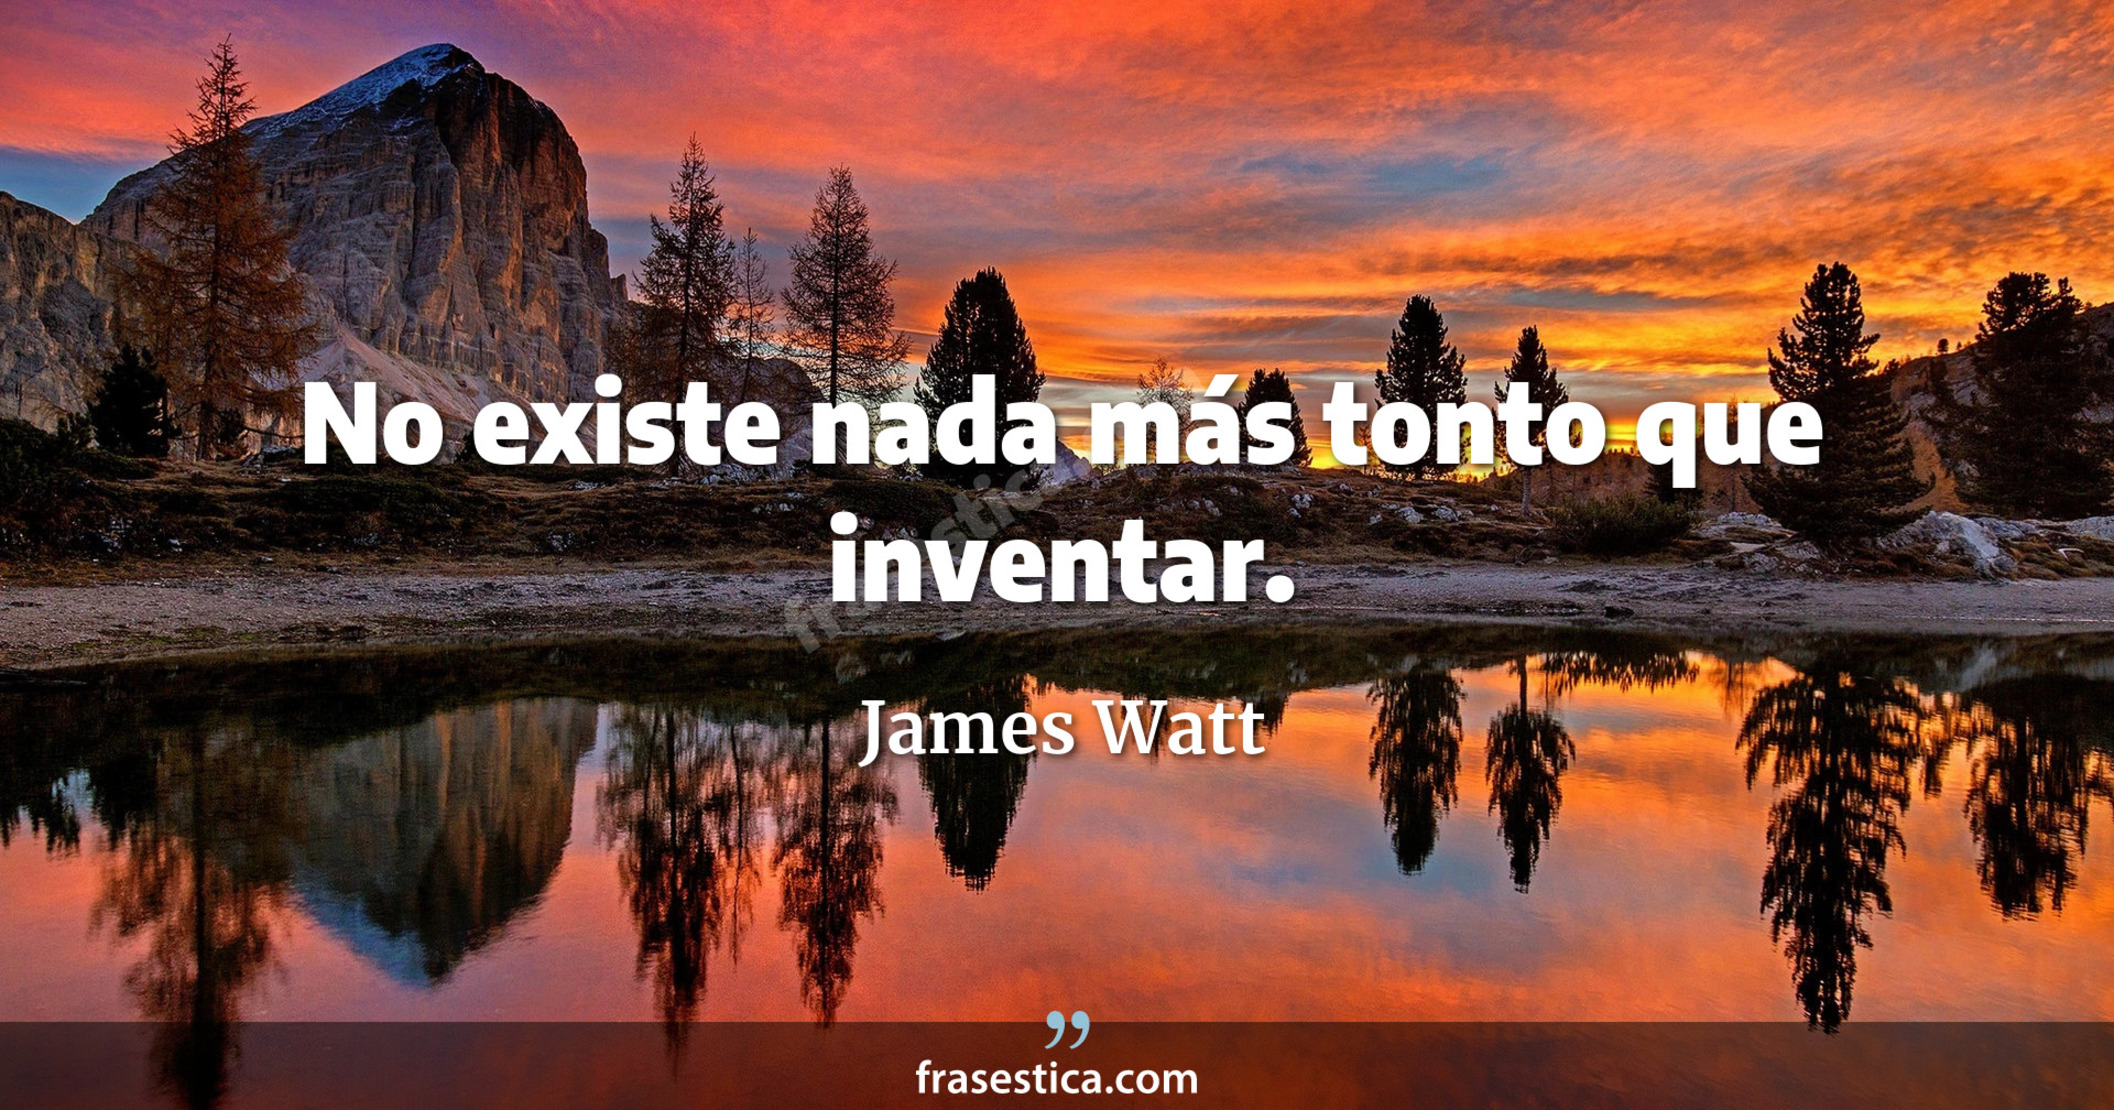 No existe nada más tonto que inventar. - James Watt